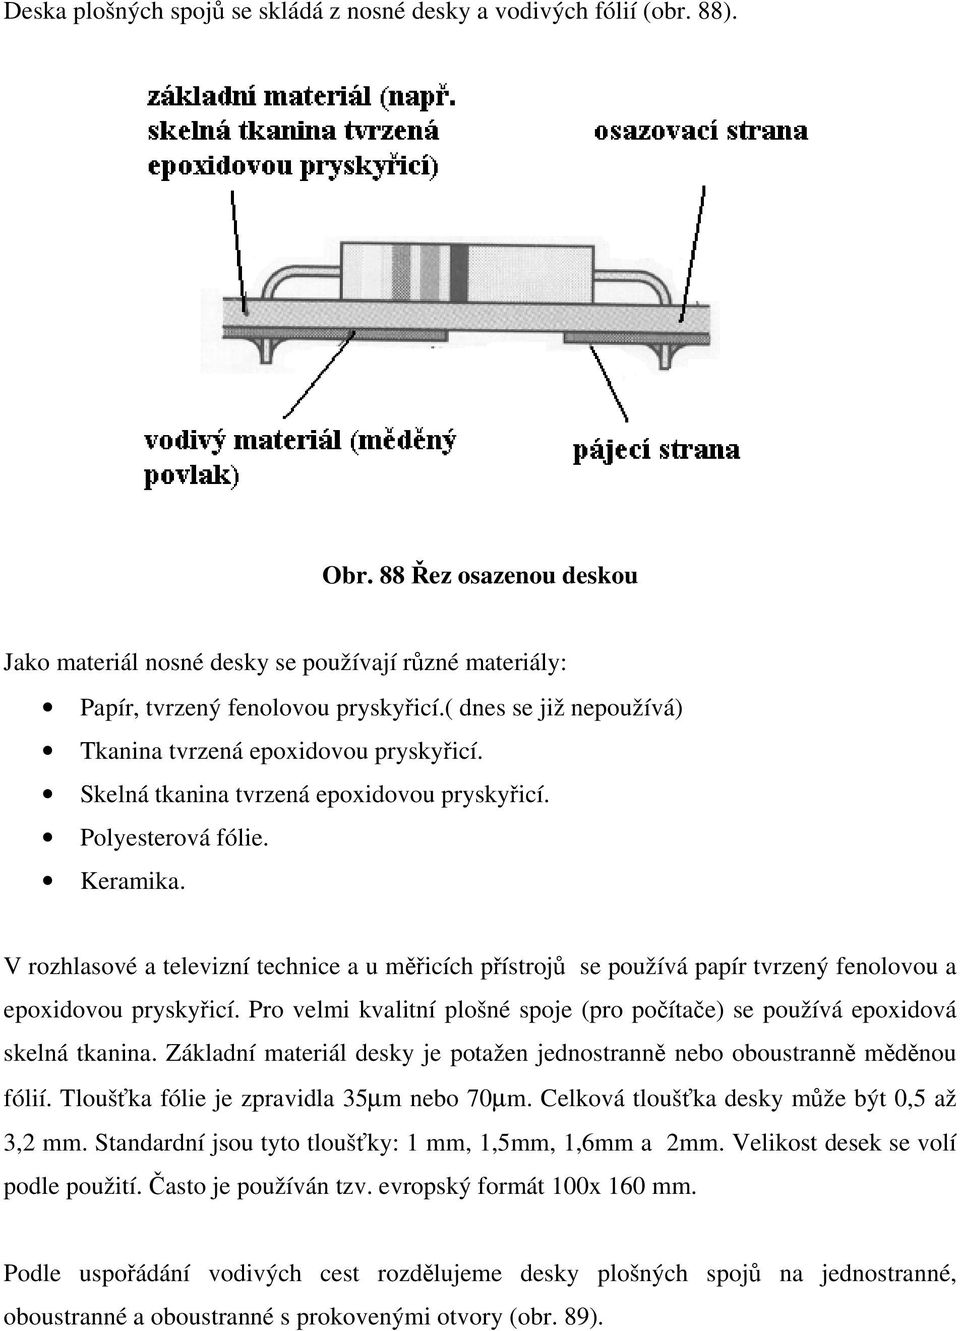 V rozhlasové a televizní technice a u měřicích přístrojů se používá papír tvrzený fenolovou a epoxidovou pryskyřicí. Pro velmi kvalitní plošné spoje (pro počítače) se používá epoxidová skelná tkanina.